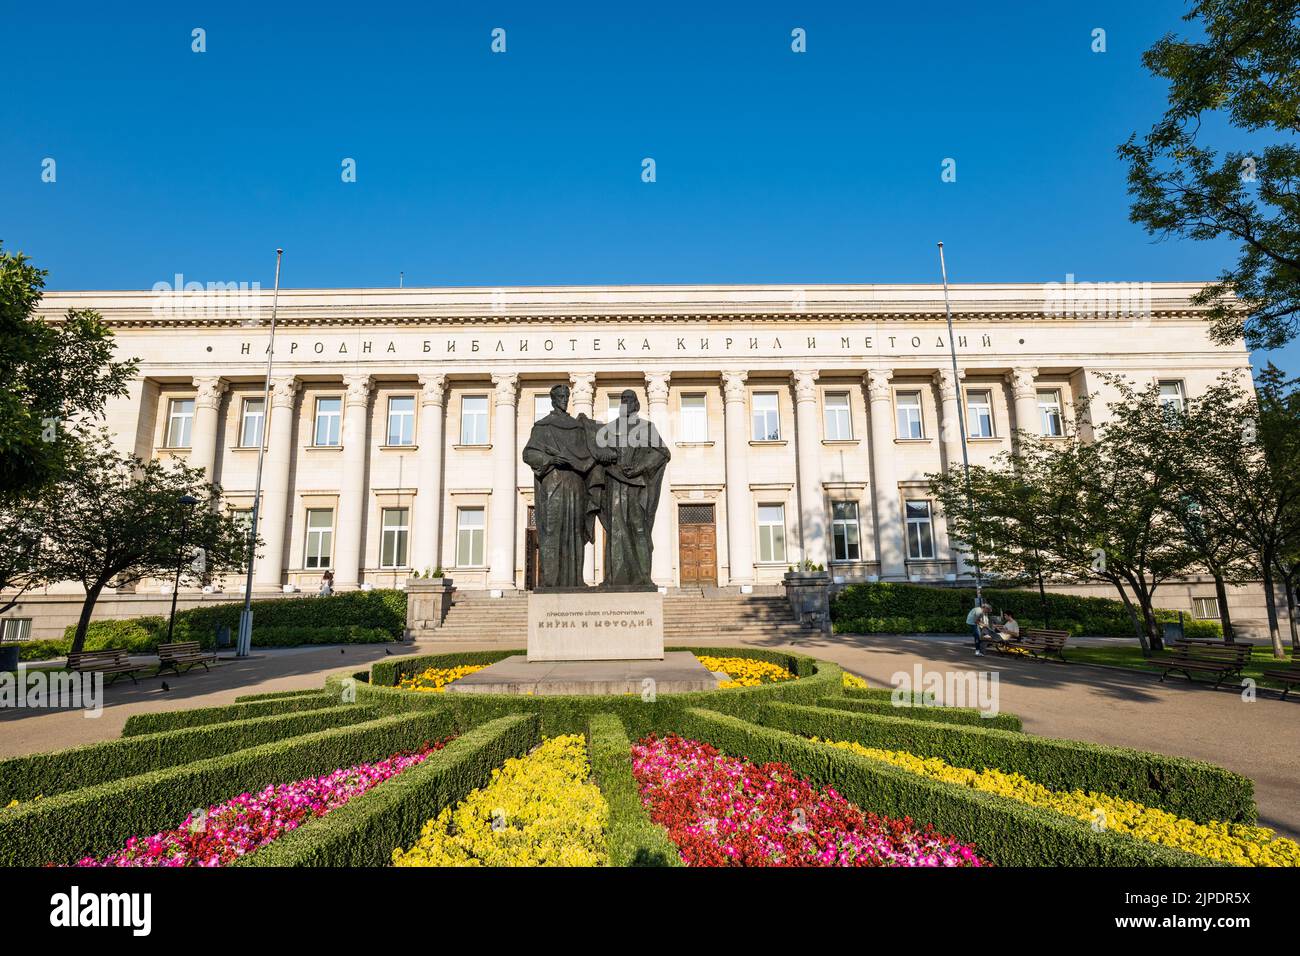 Sofia, Bulgarie - juillet 2022 : Bibliothèque nationale Cyril et Methodius à Sofia, Bulgarie. Ils sont crédités avec la conception de l'alphabet Glagolitique. Banque D'Images